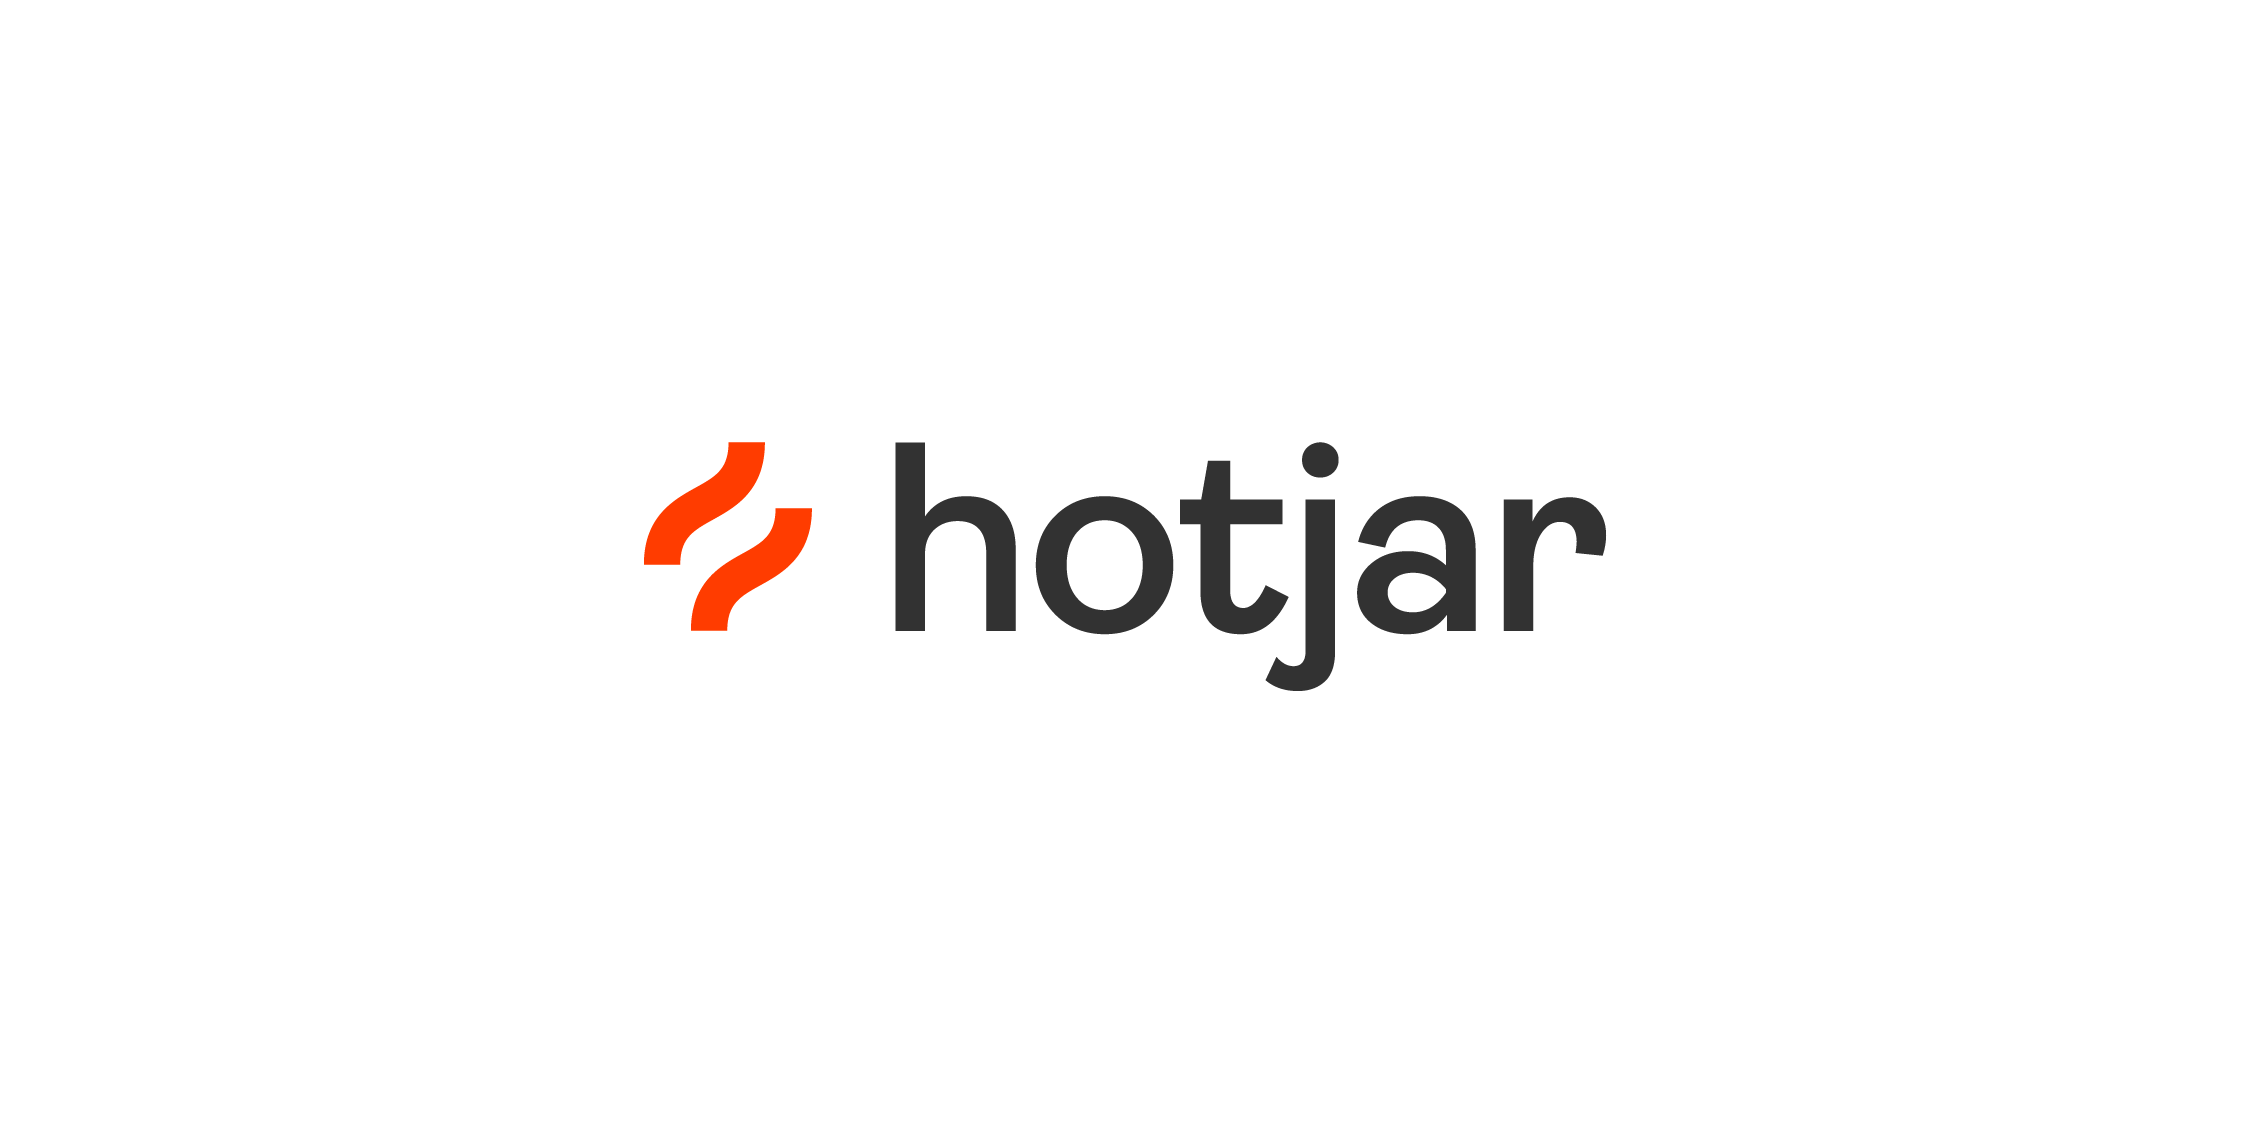 Hotjar demand generation tools